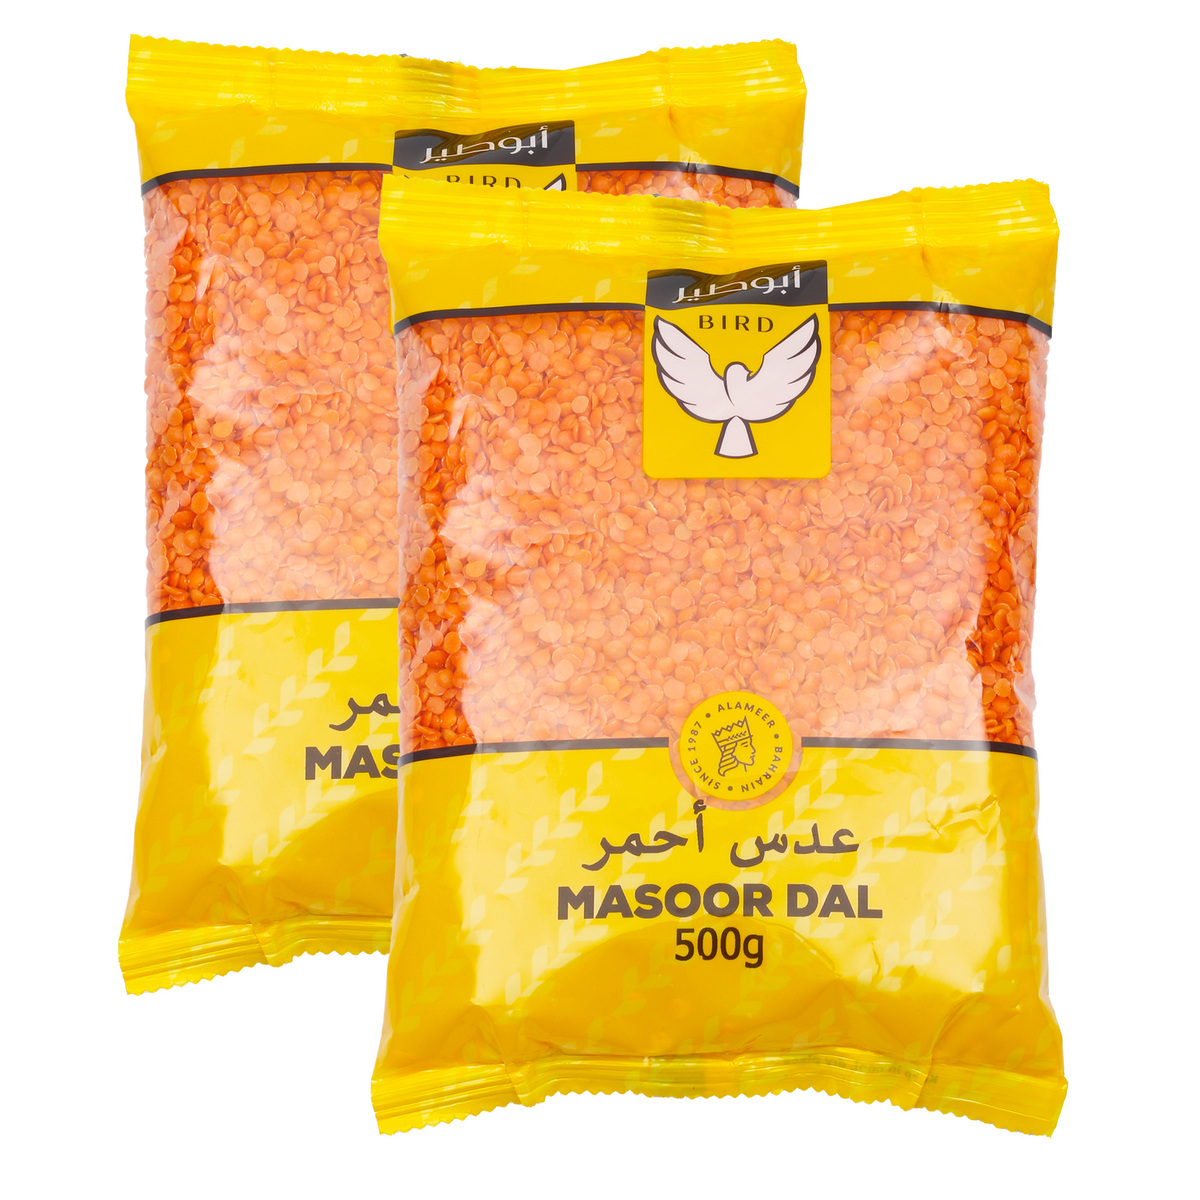 Bird Masoor Dal Value Pack 2 x 500 g